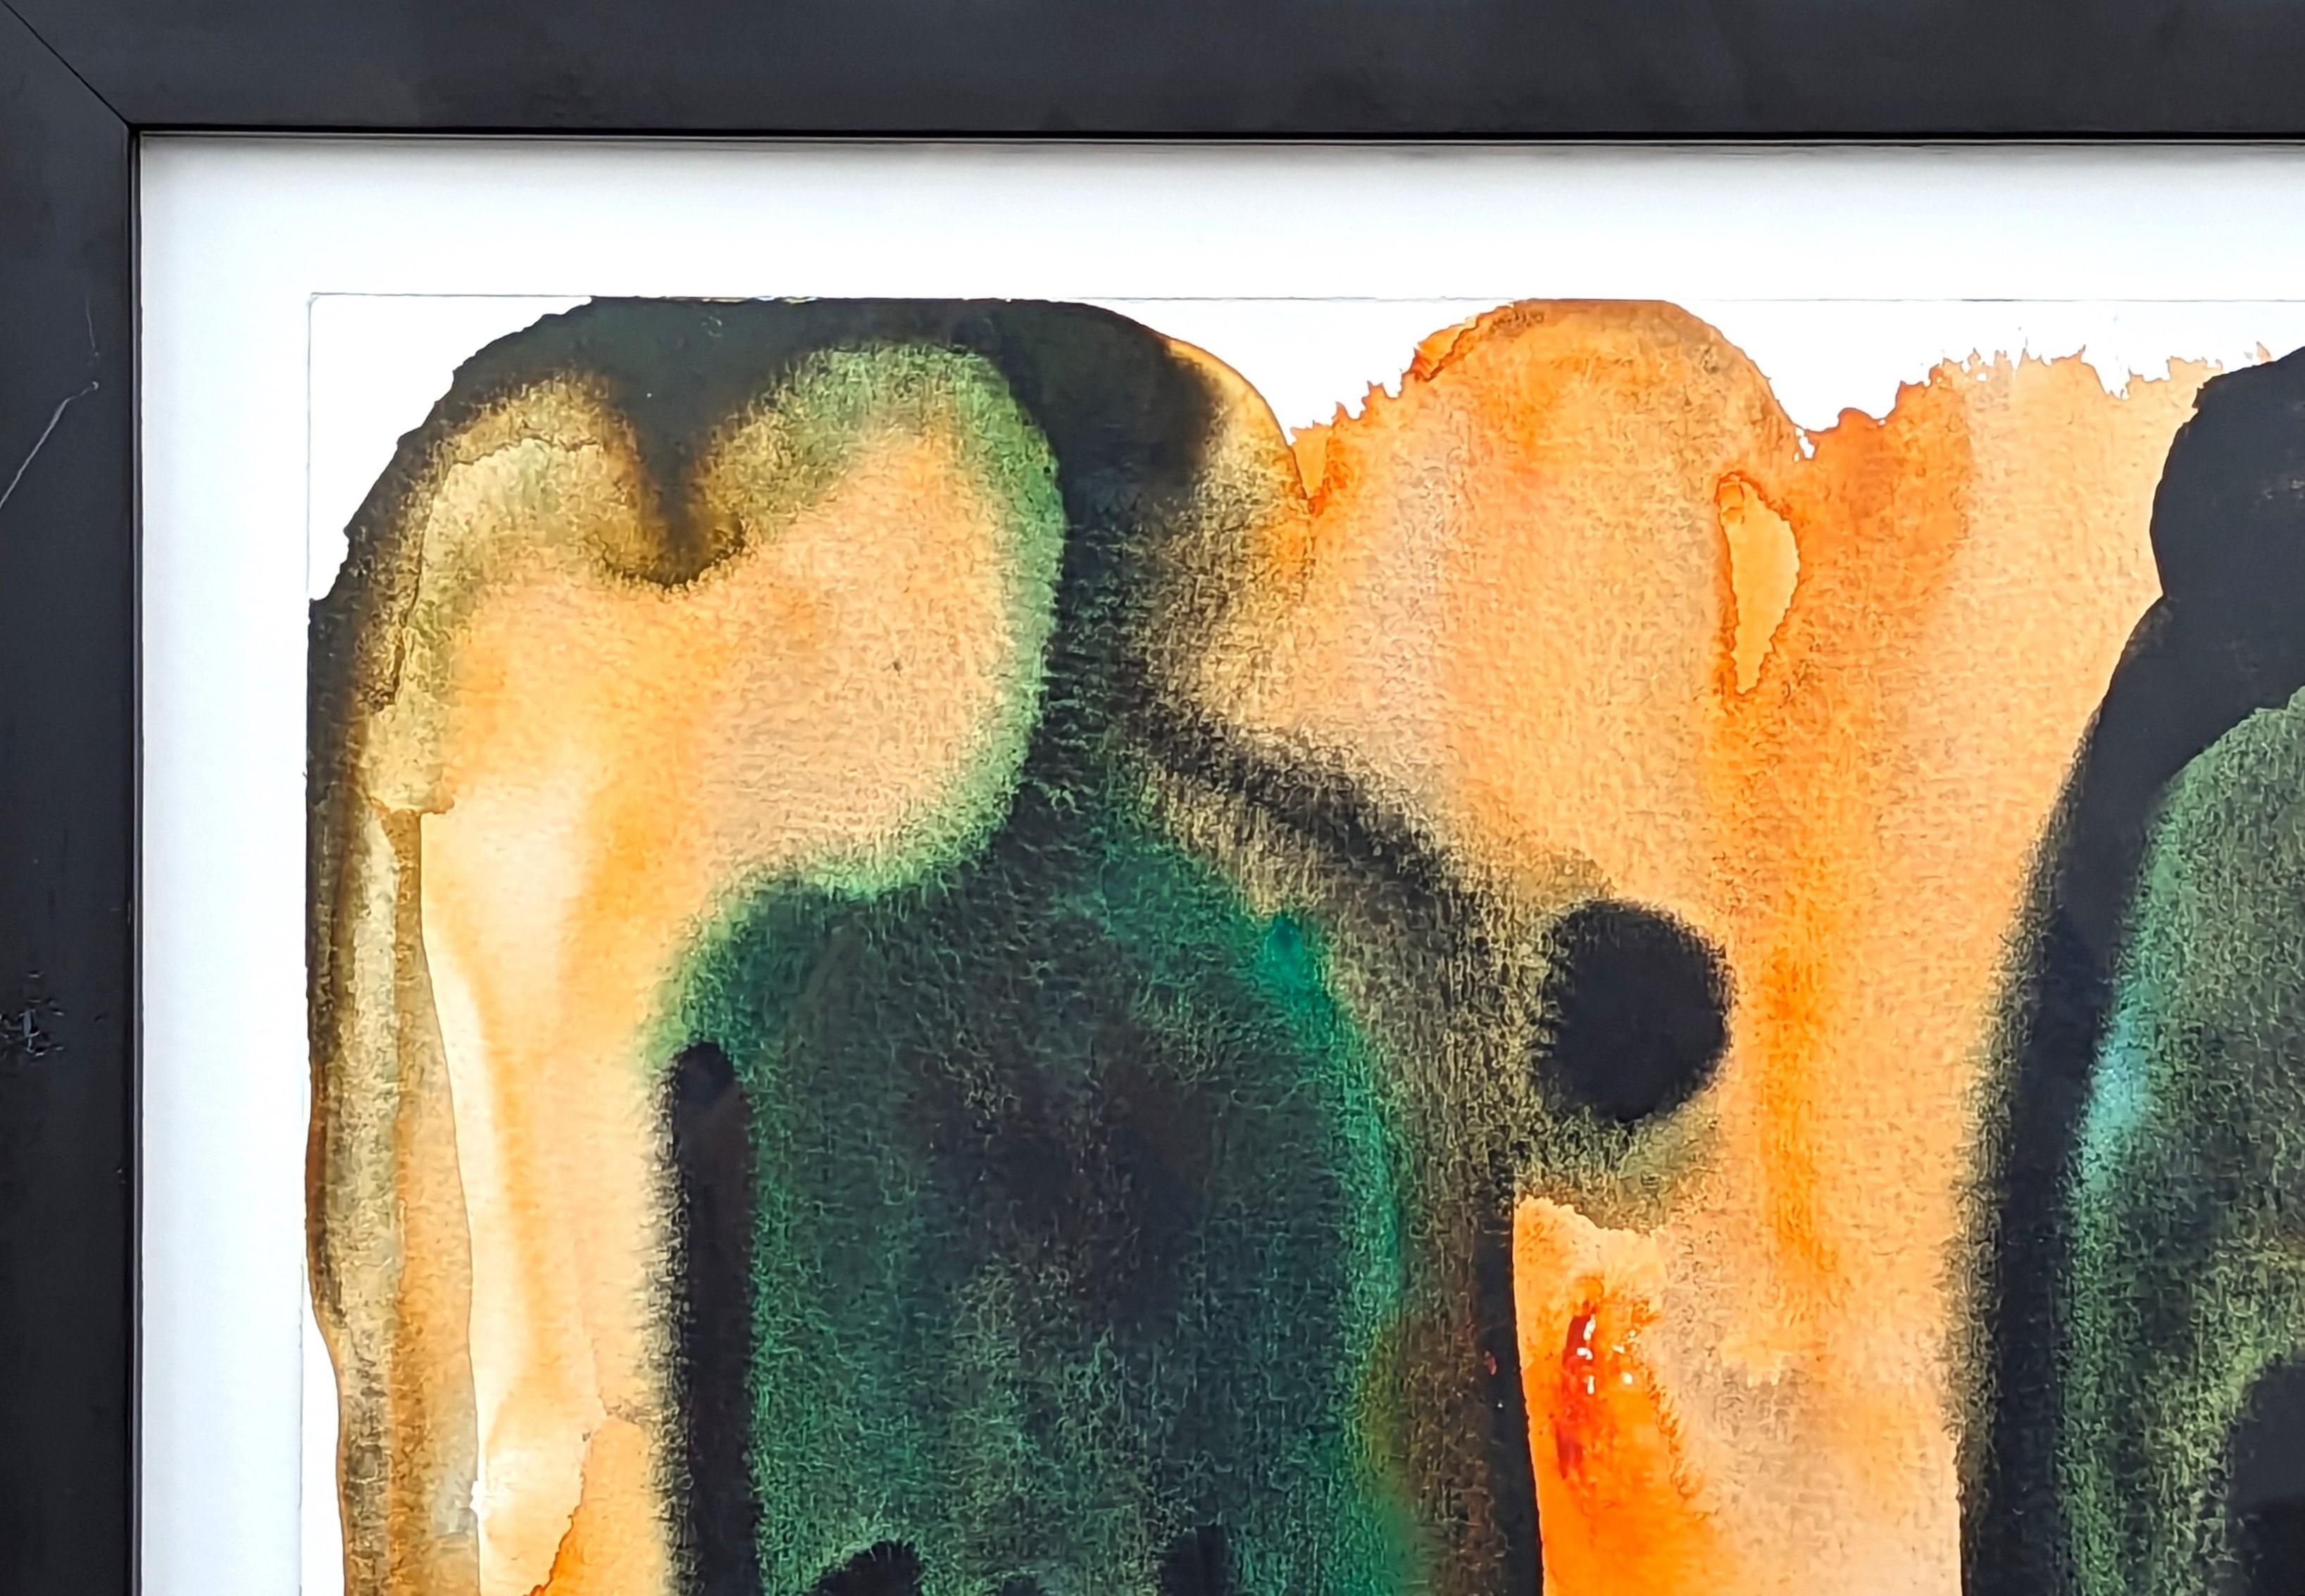 Modernes abstraktes Aquarell in Blau- und Orangetönen des gebürtigen Houstoners Dick Wray. Das Werk zeigt blau getönte, geschwungene organische Formen vor einem orangefarbenen Hintergrund. Signiert und datiert am unteren Rand der Vorderseite.